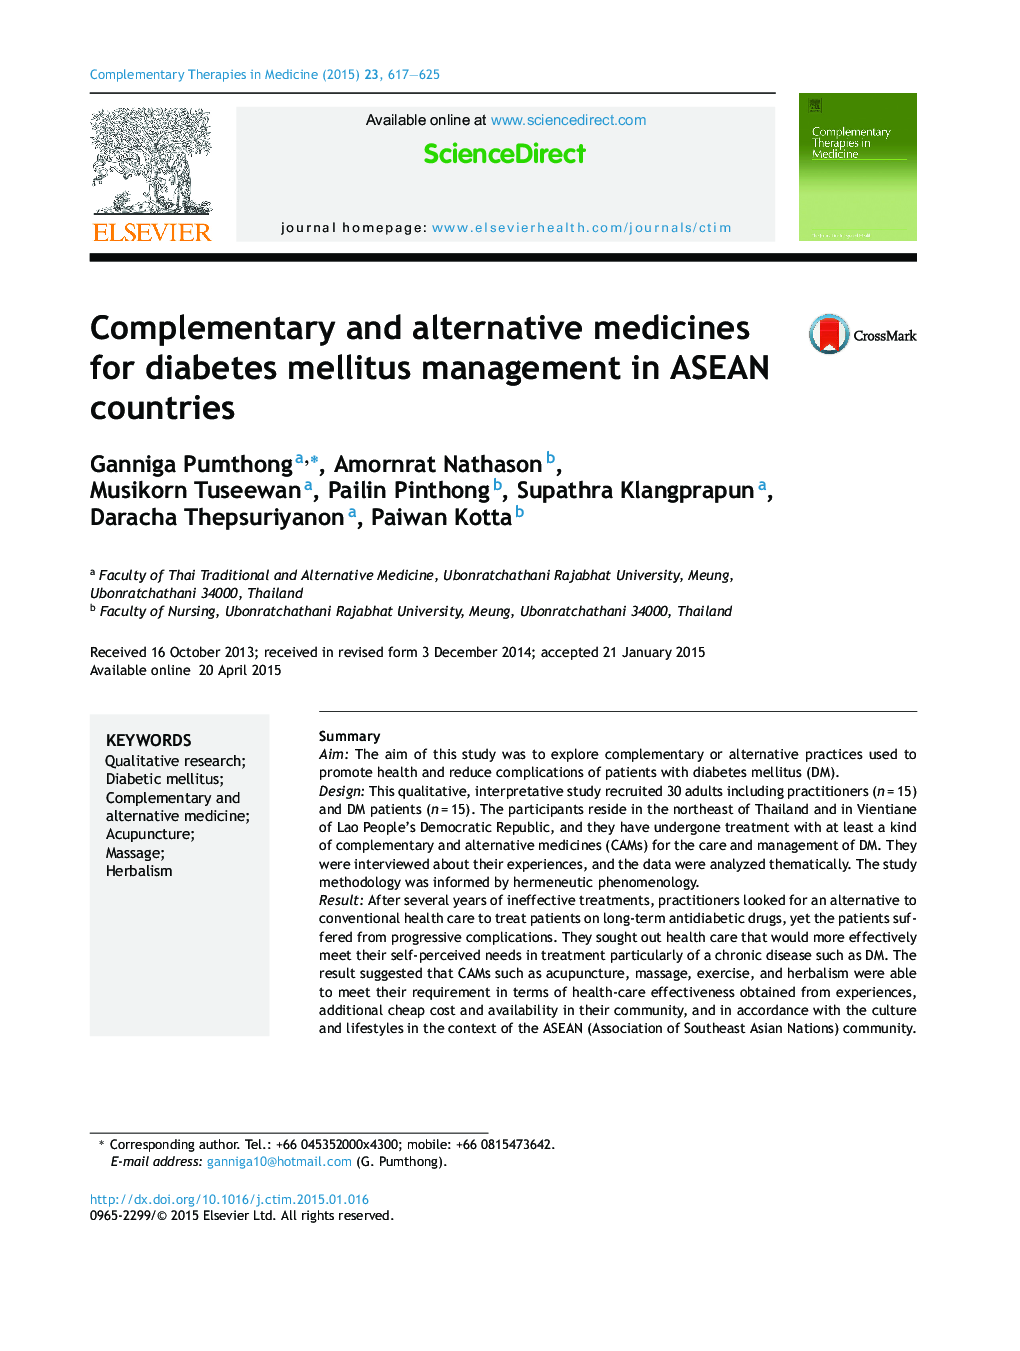 داروهای تکمیلی و جایگزین برای مدیریت دیابت در کشورهای ASEAN